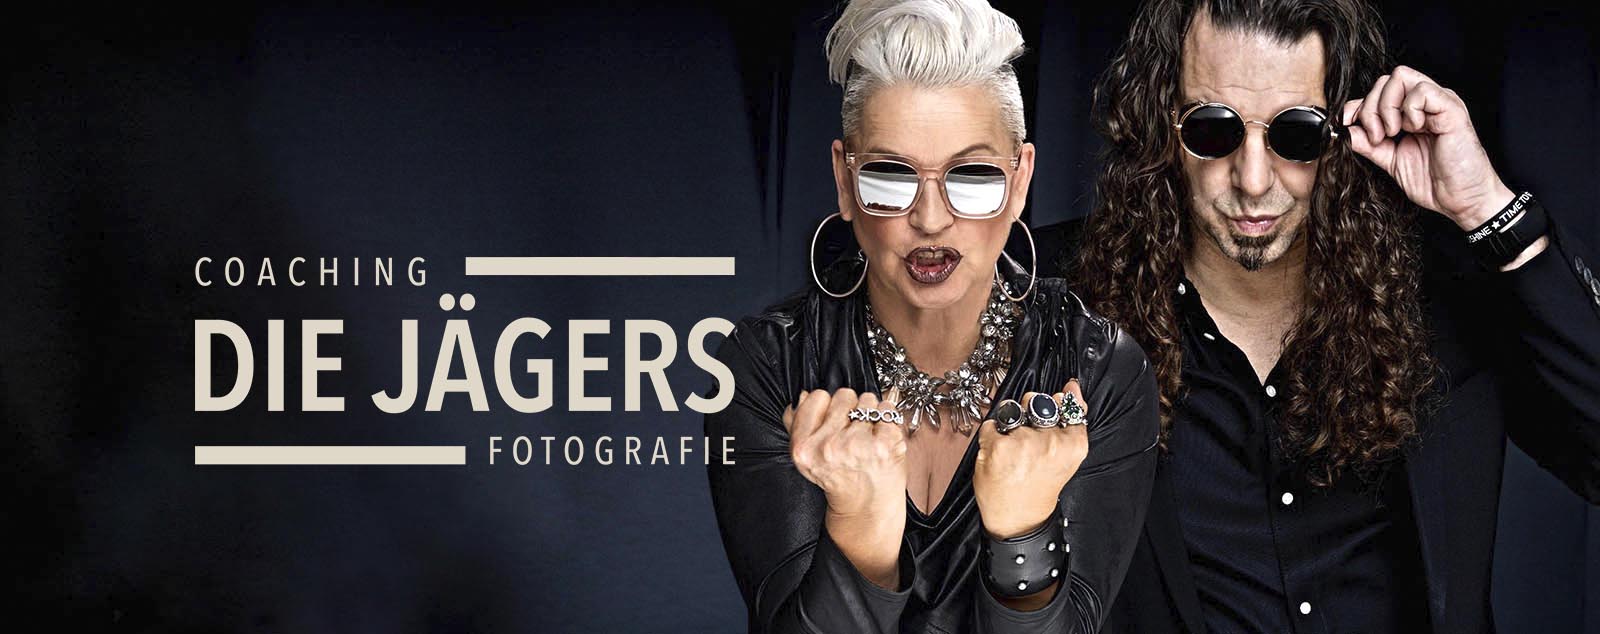 jaegerfotografen, martina und markus jaeger, campaign portrait, "die jägers" LOGO für Pop Up Studio